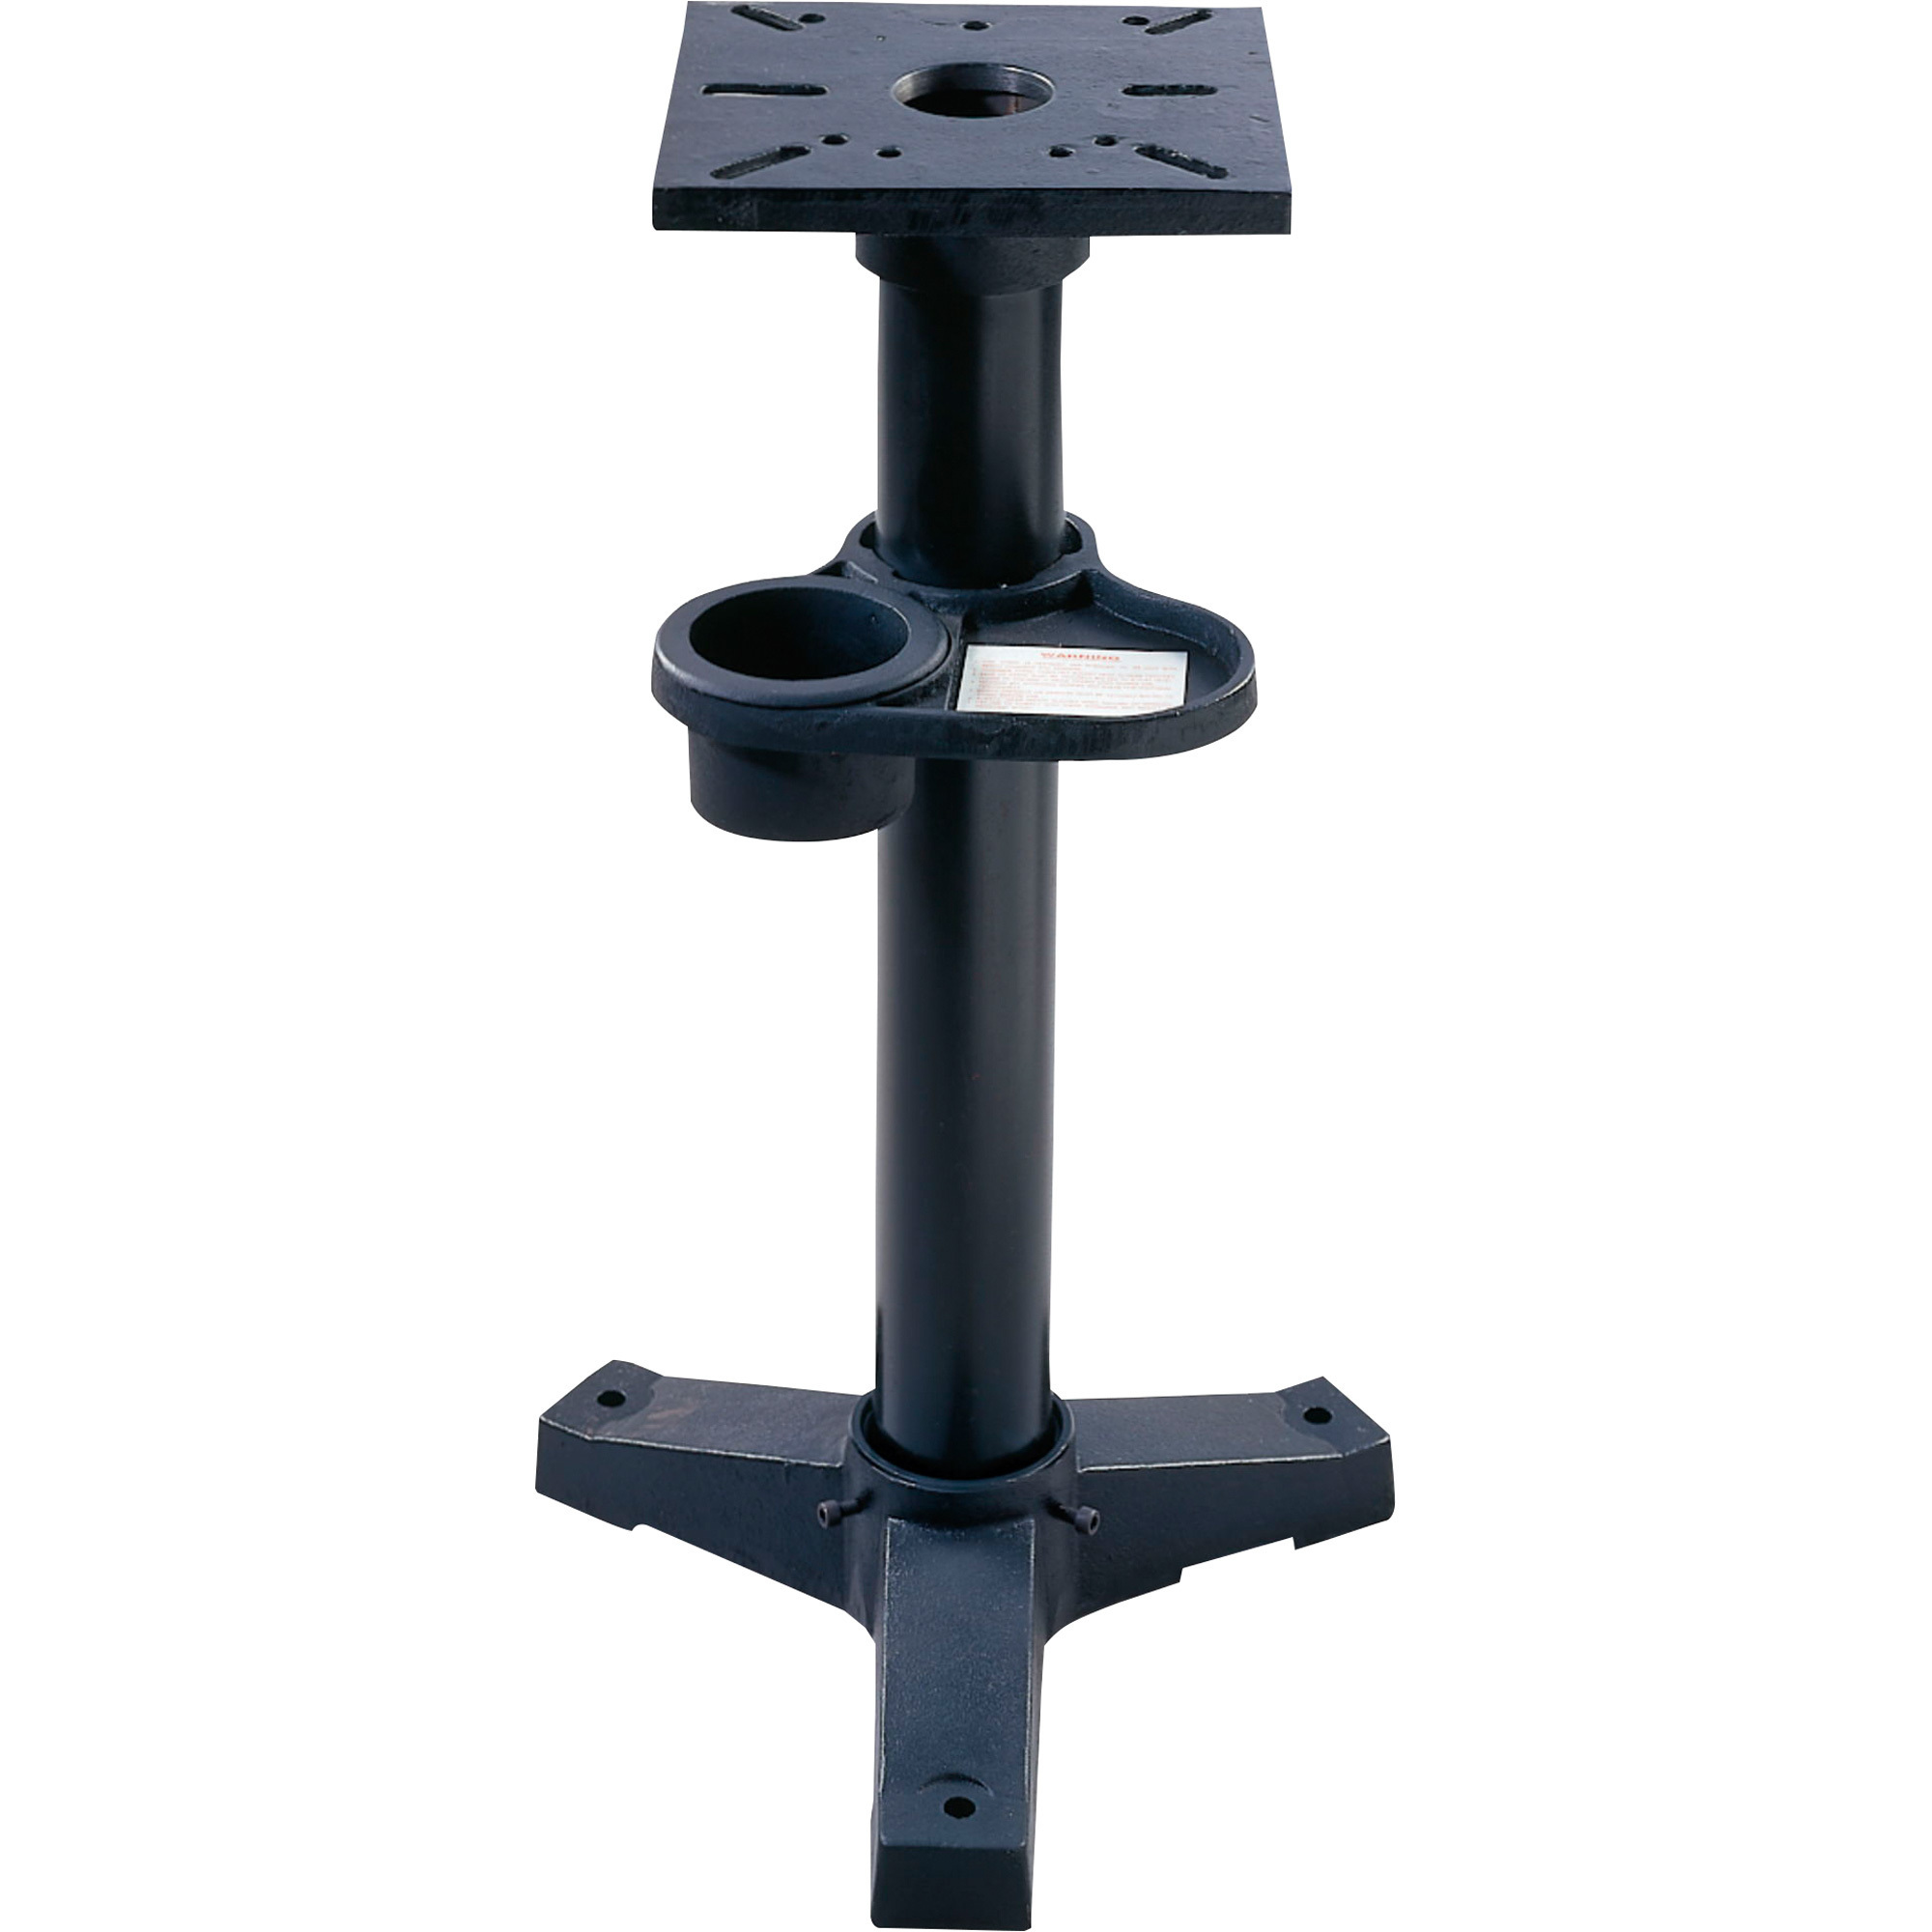 JET Pedestal Bench Grinder Stand,Fits JET JBG-8A Bench Grinder, Model JPS-2A